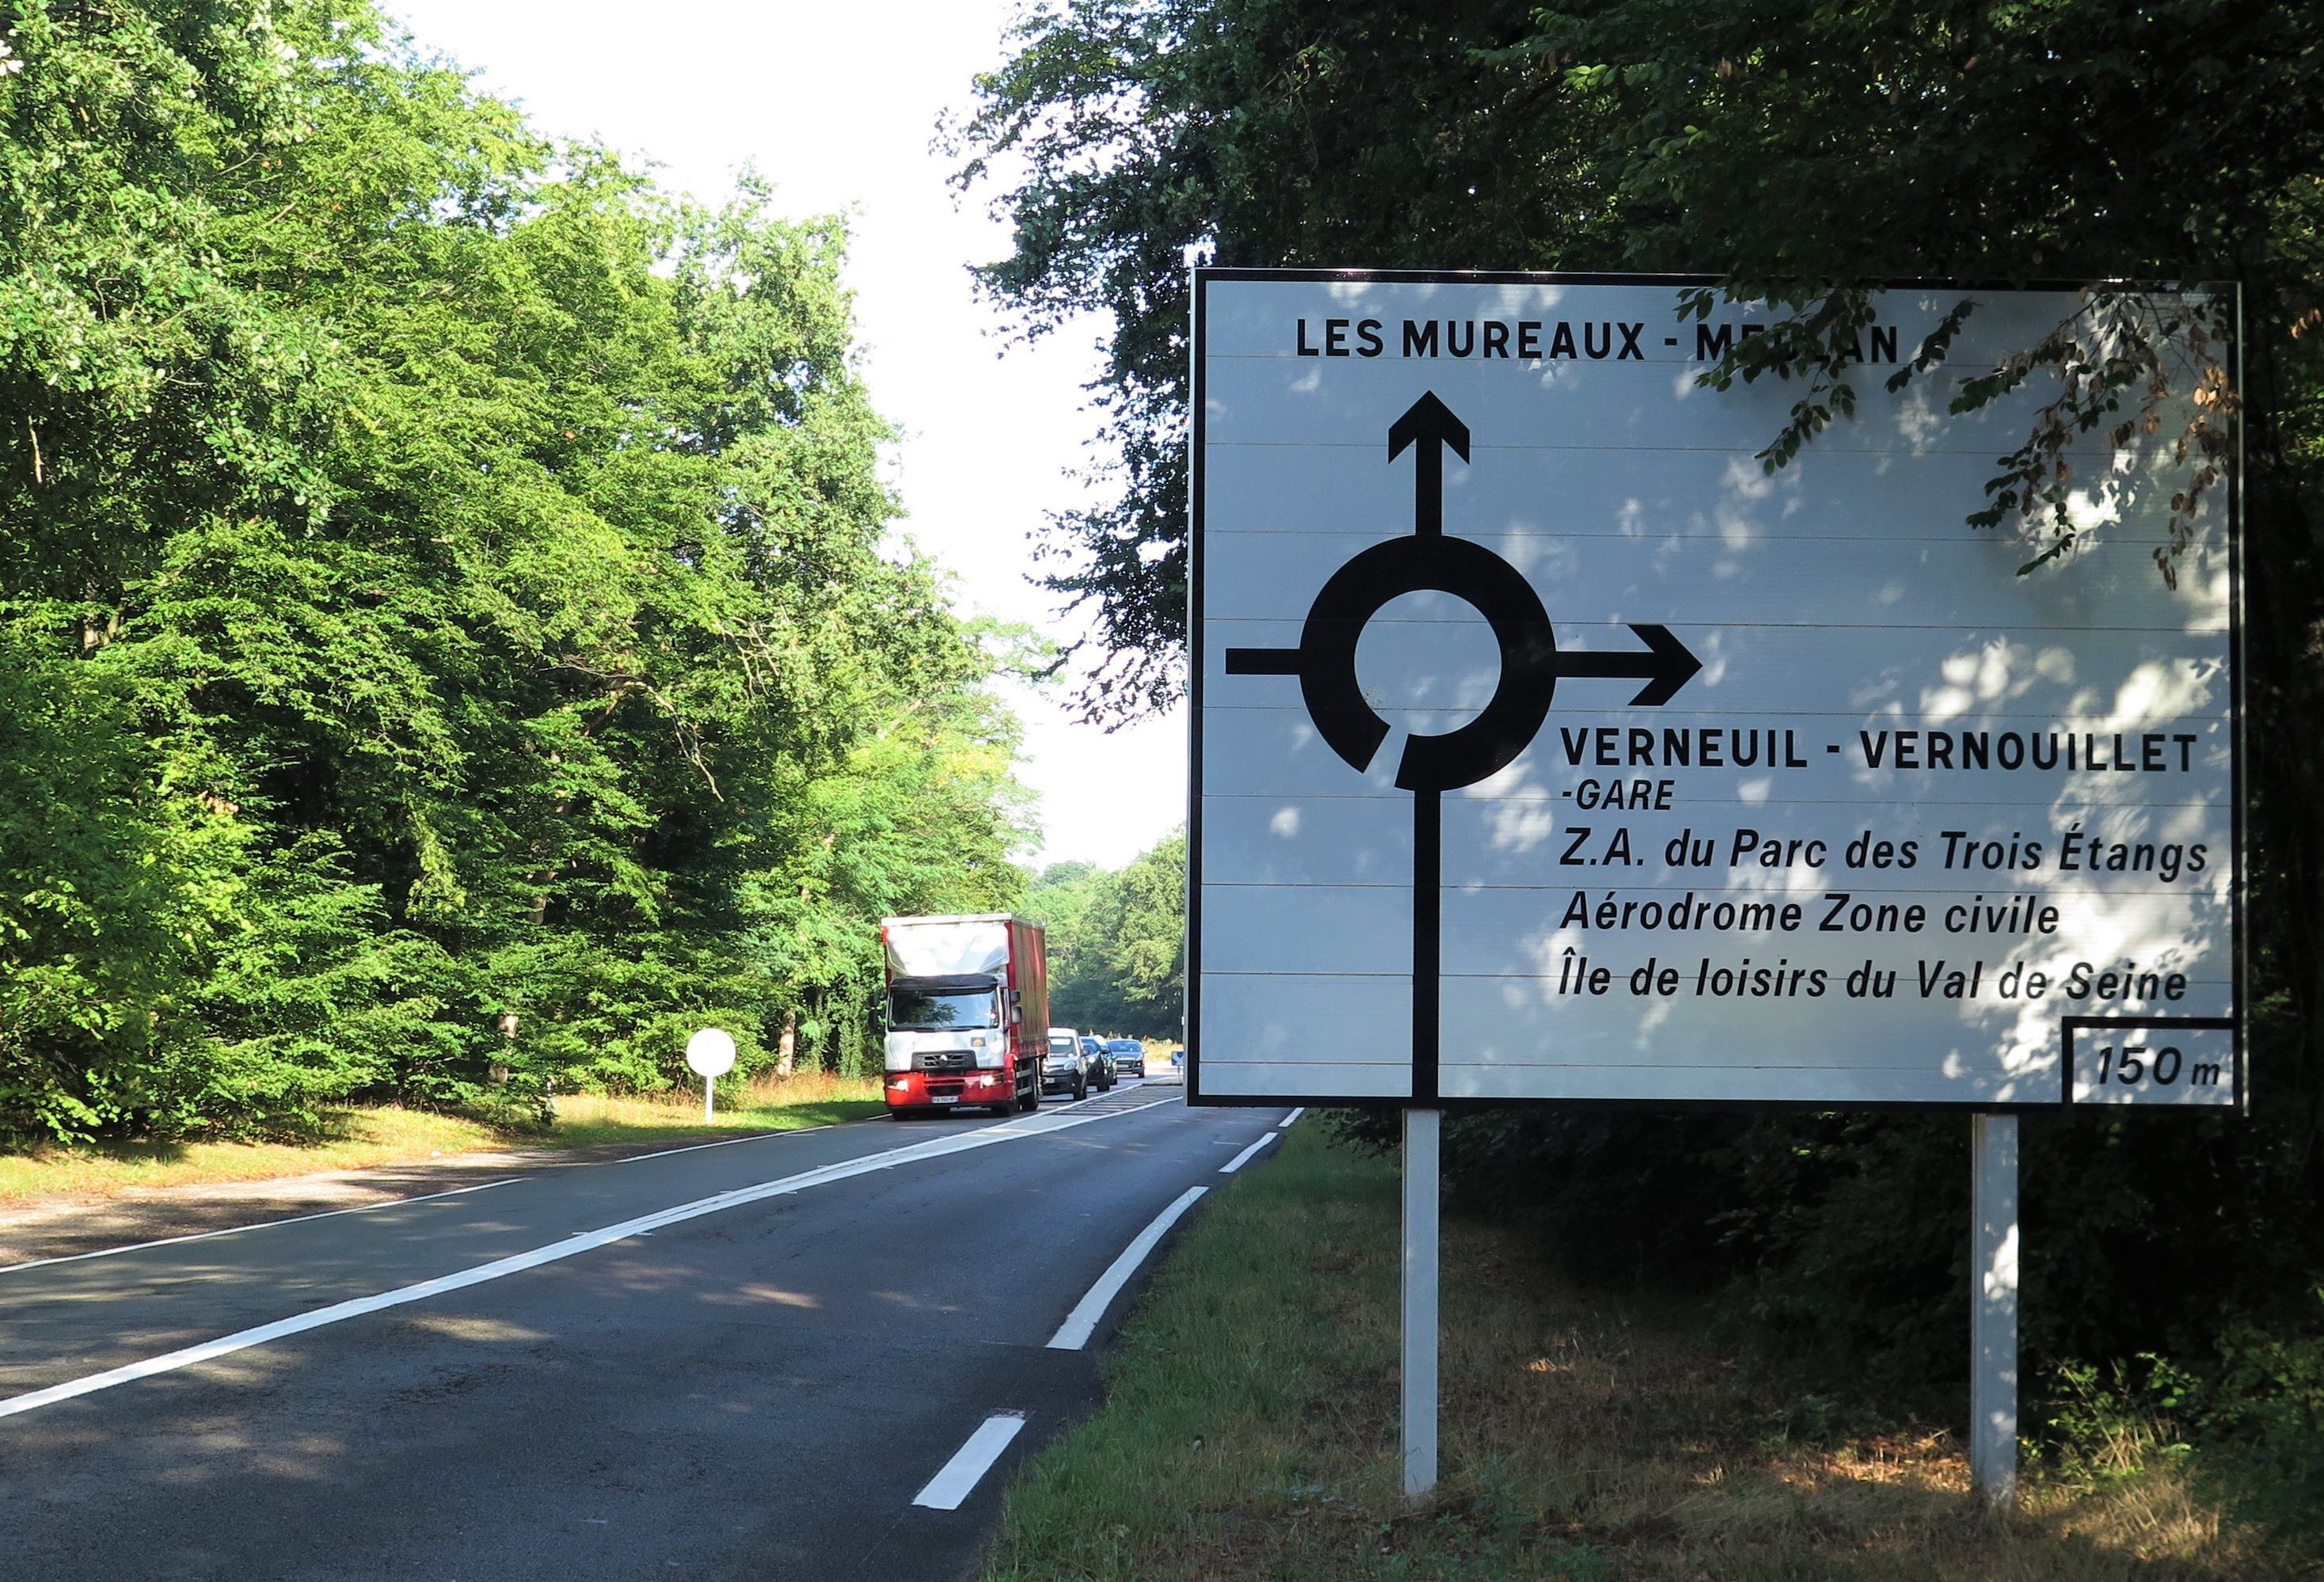 Le projet de contournement de la D154 prévoit de traverser le bois de Verneuil et est fortement contesté au niveau local. LP/Y.F.